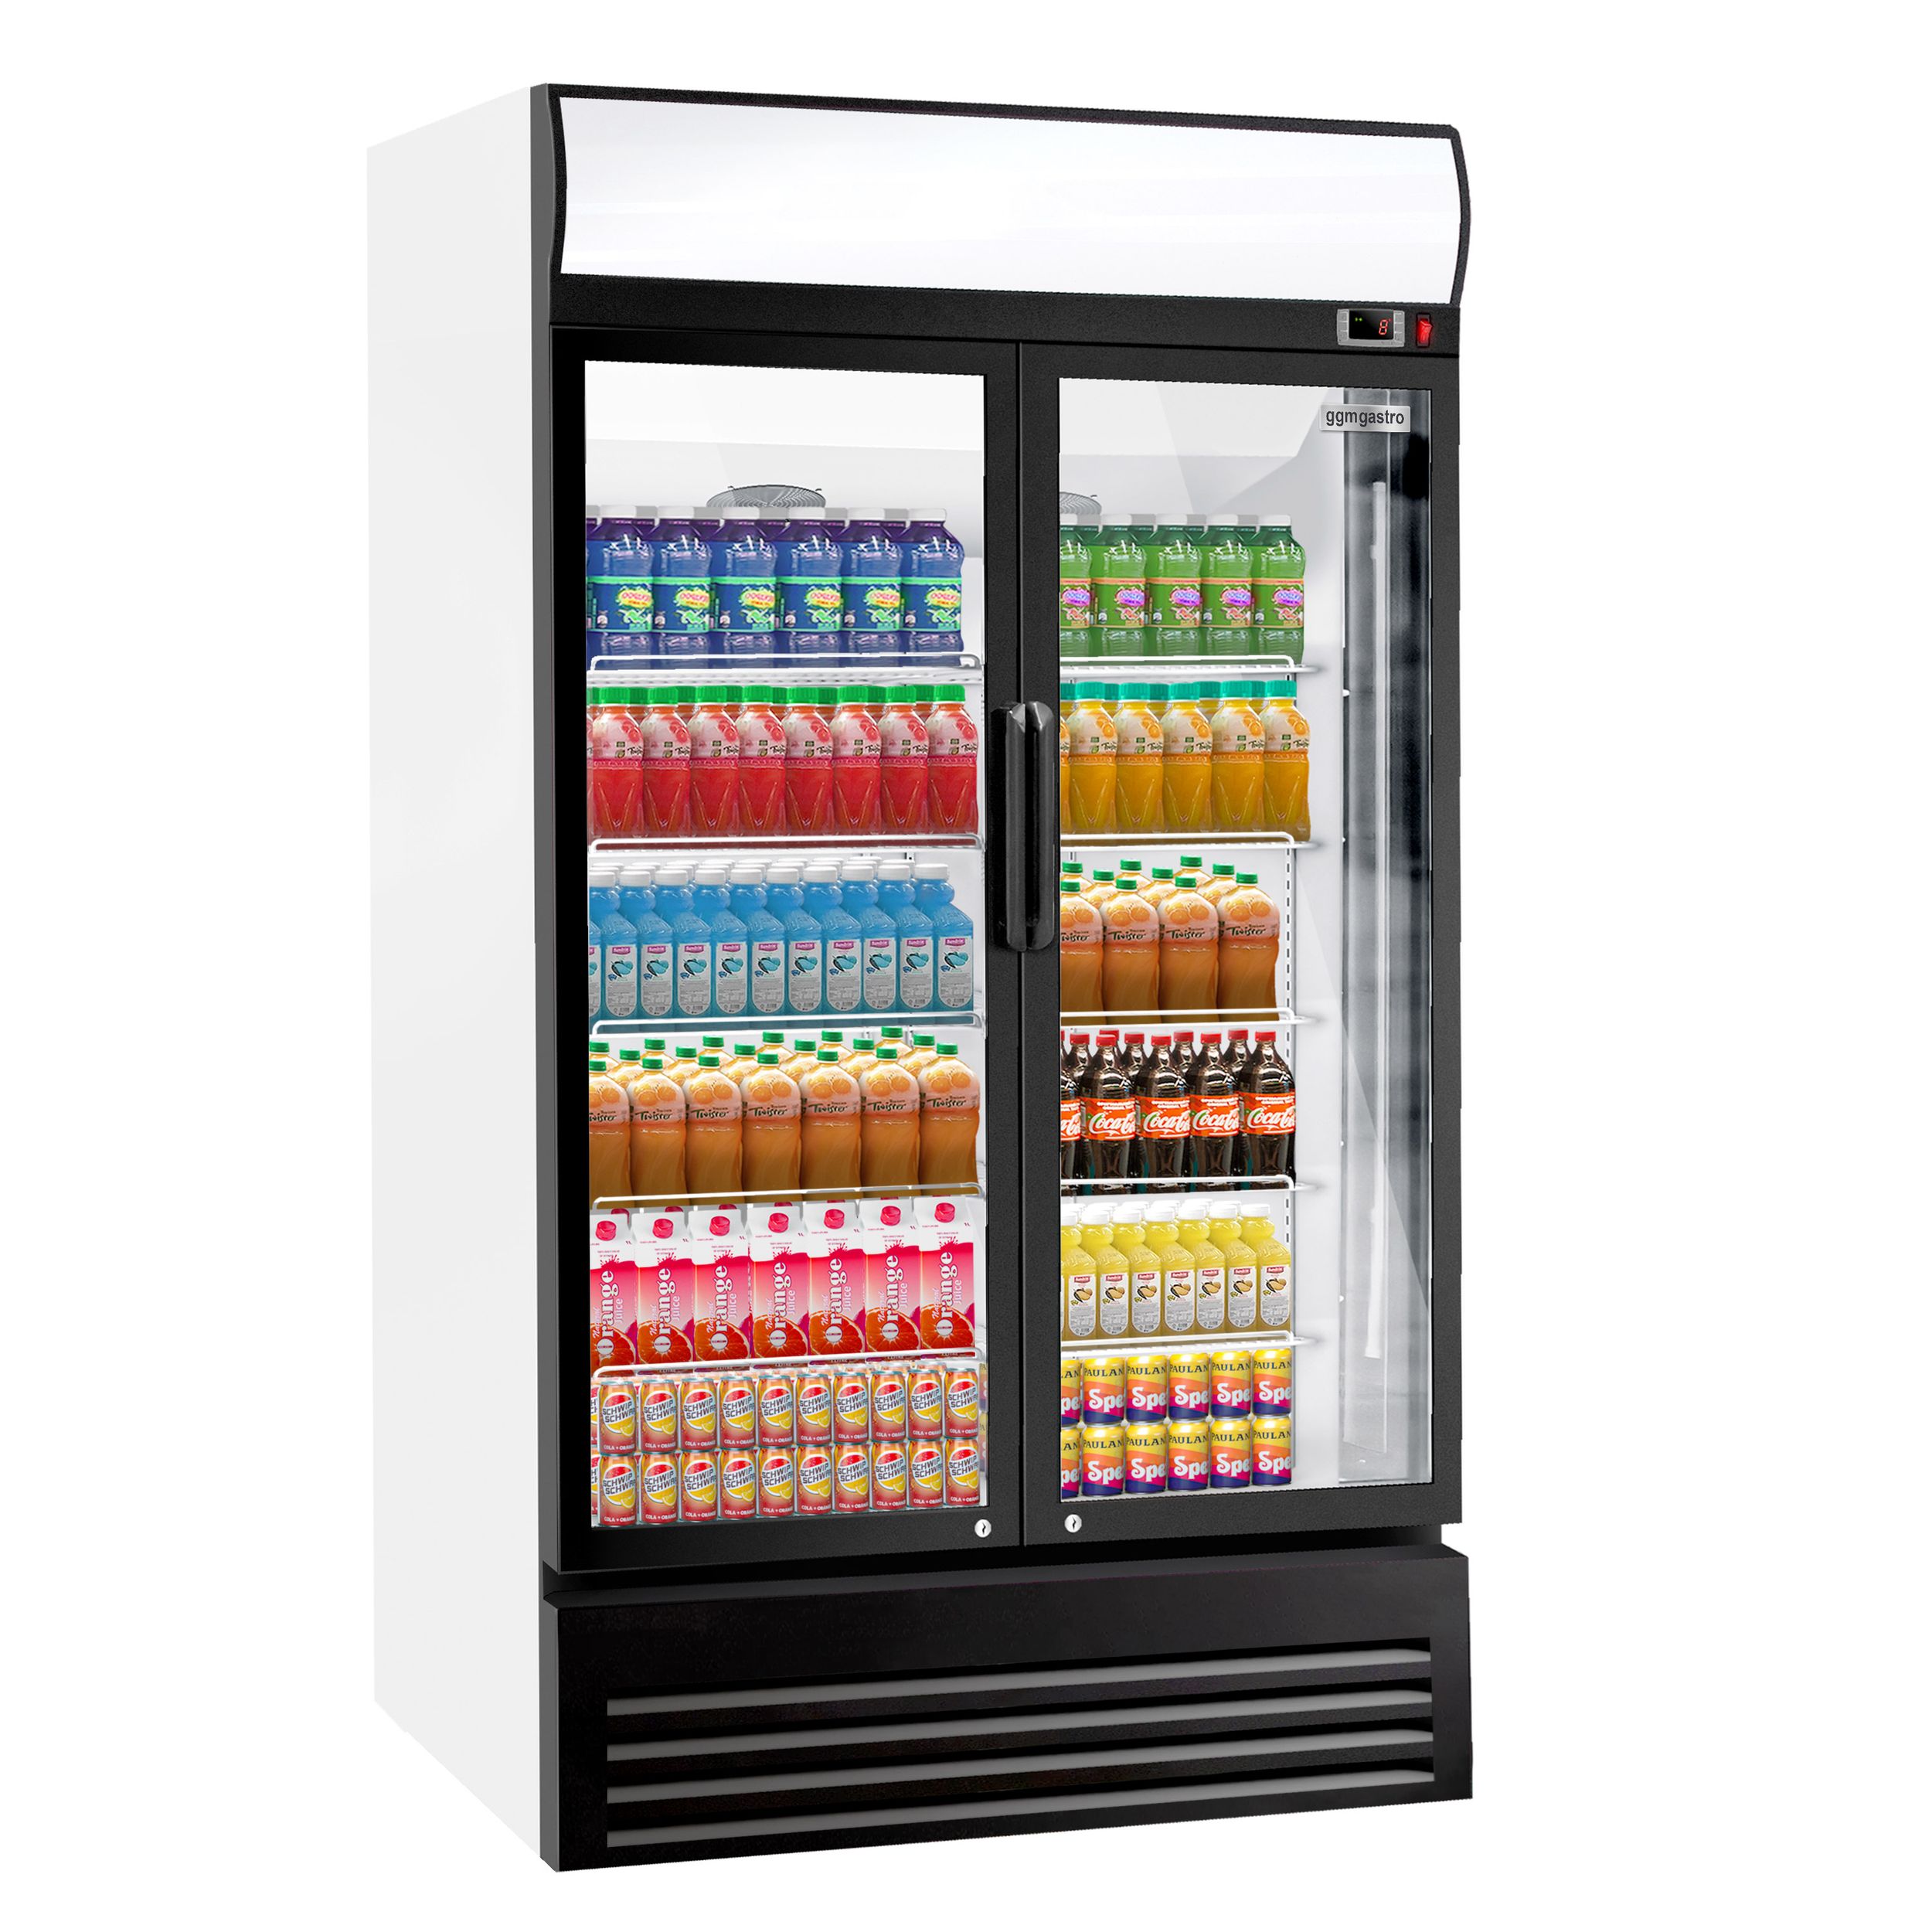 Getränkekühlschrank - 1310 Liter - mit Werbedisplay